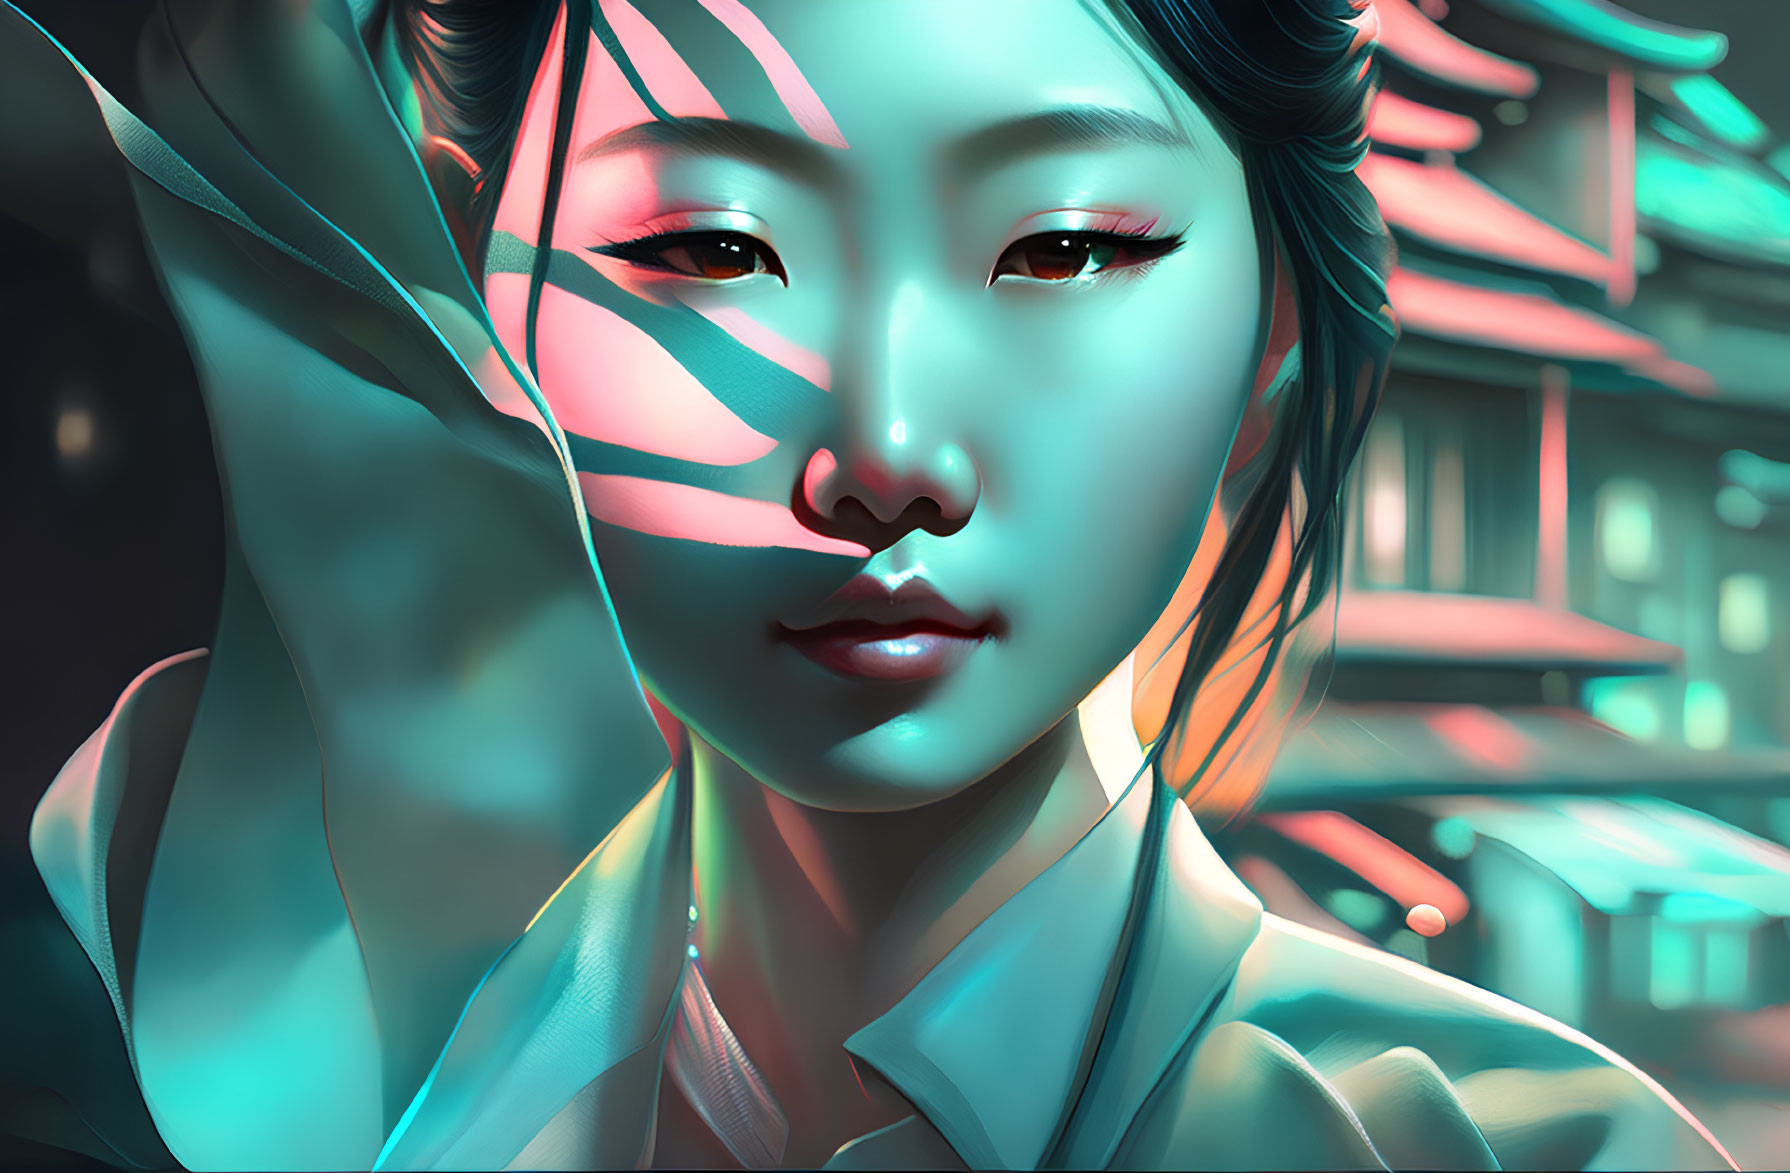 Futuristic digital artwork of woman with cyan neon lighting in cyberpunk setting